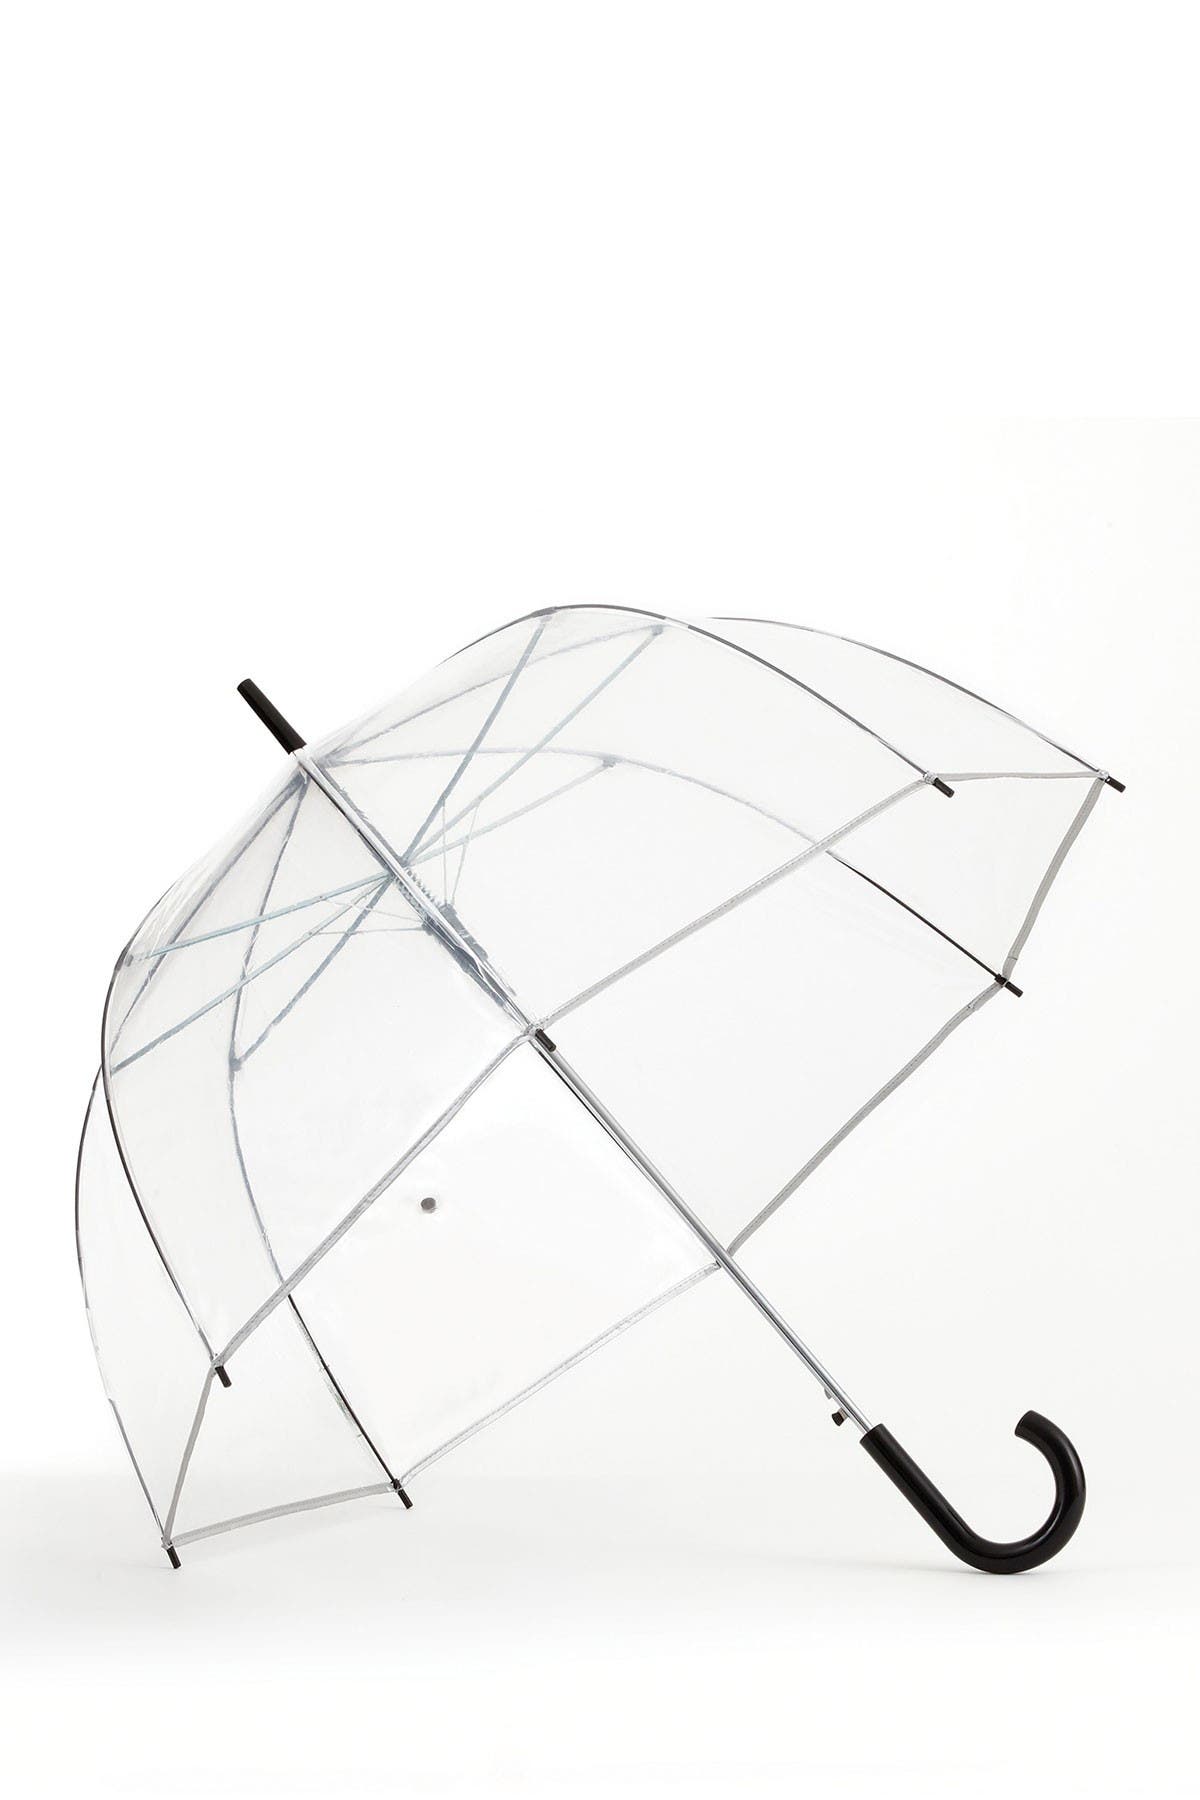 Shedrain Automatic Open Clear Bubble Stick Umbrella In Silver